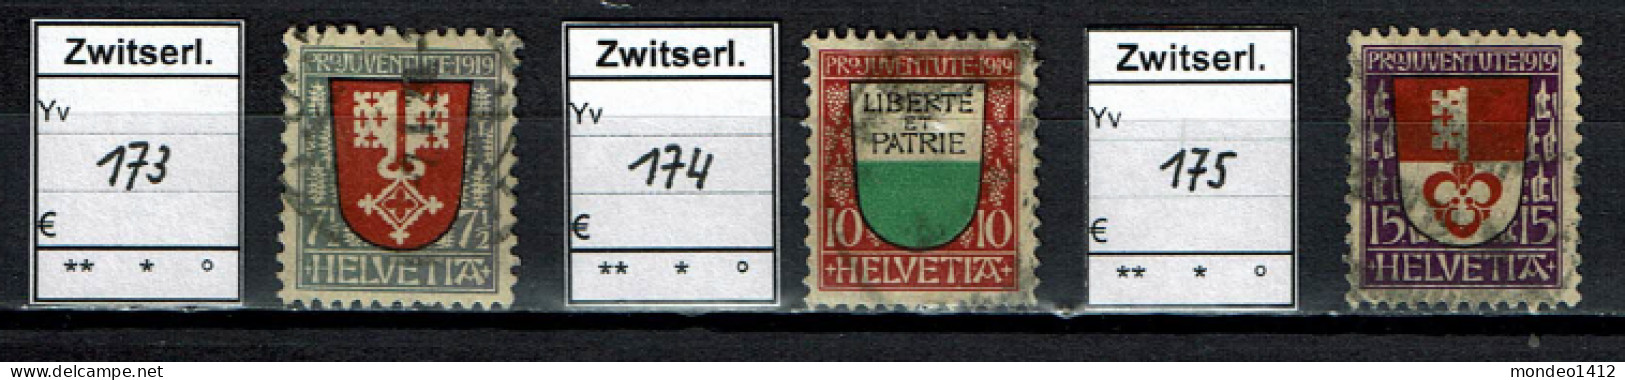 Suisse 1919 - YT 173/175 - Oblit. Used - Oblitérés